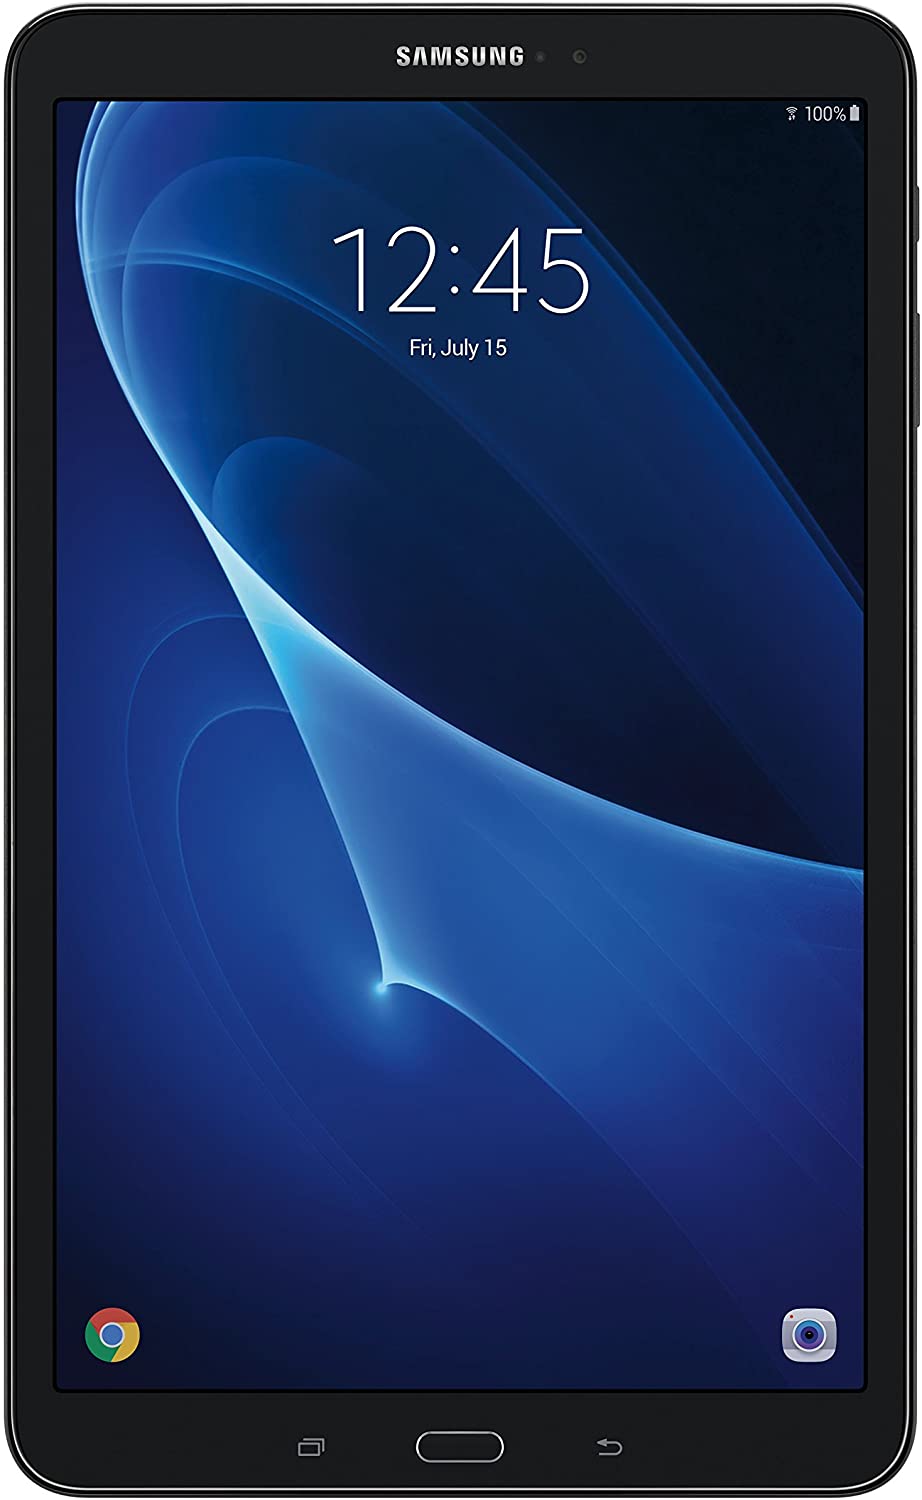 Samsung Galaxy Tab A SM-T580NZKAXAR 10.1-Inch 16 GB, Tablet